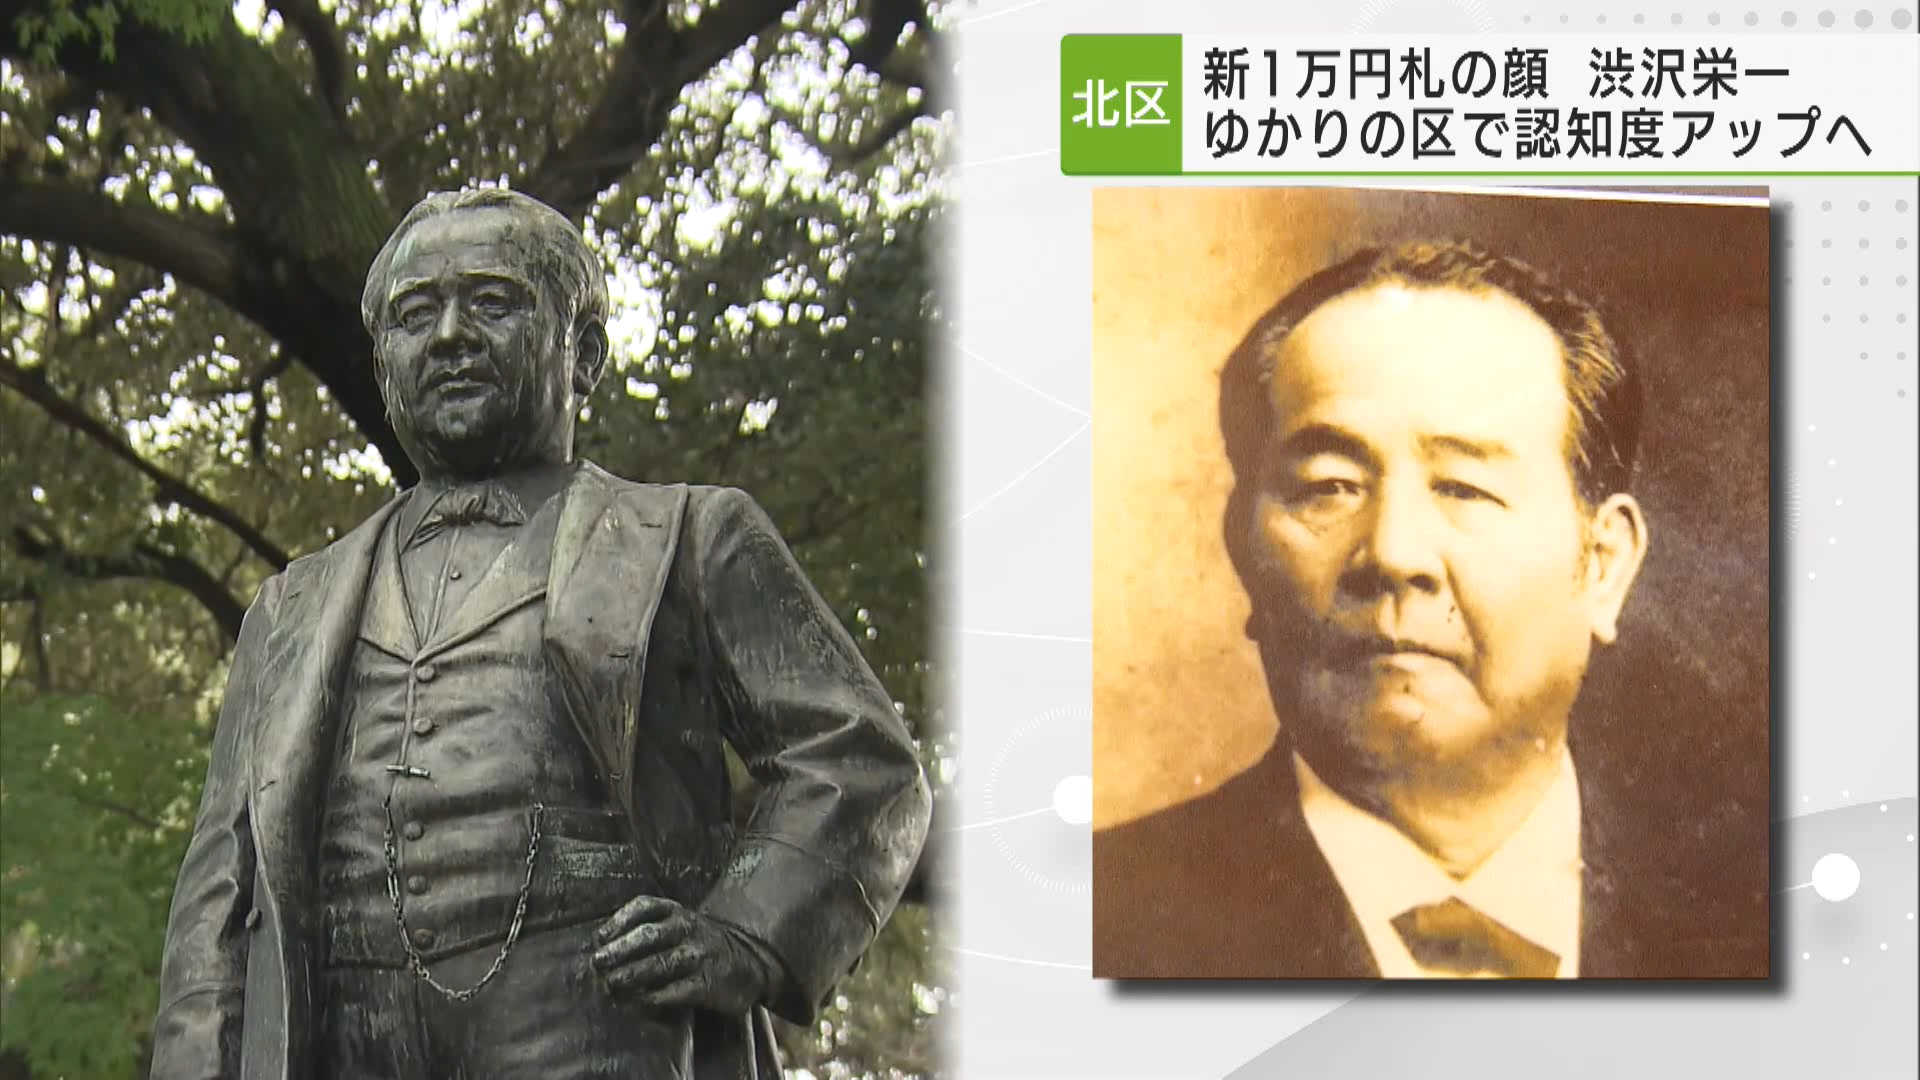 新紙幣発行まで3月25日で100日、新一万円札は「日本の資本主義の父」とされる渋沢栄一が肖像画となります、ゆかりのある都内自治体ではイベントなどが開催され、盛り上がりを見せています。